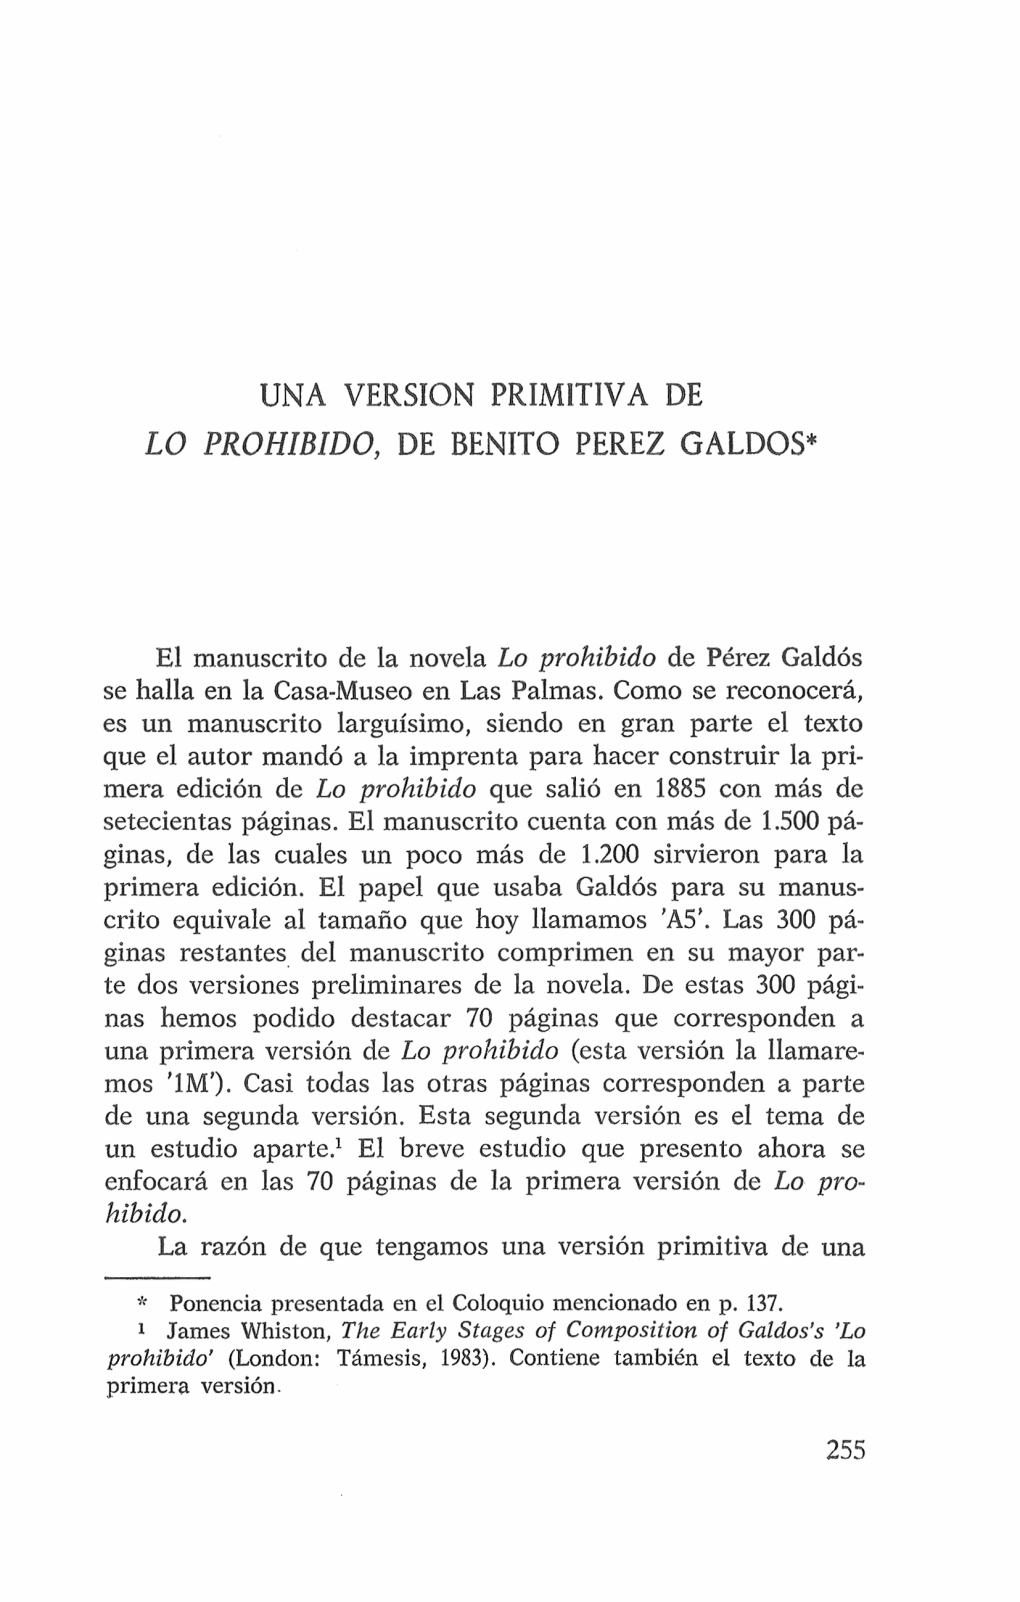 Una Versión Primitiva De "Lo Prohibido" De Benito Pérez Galdós